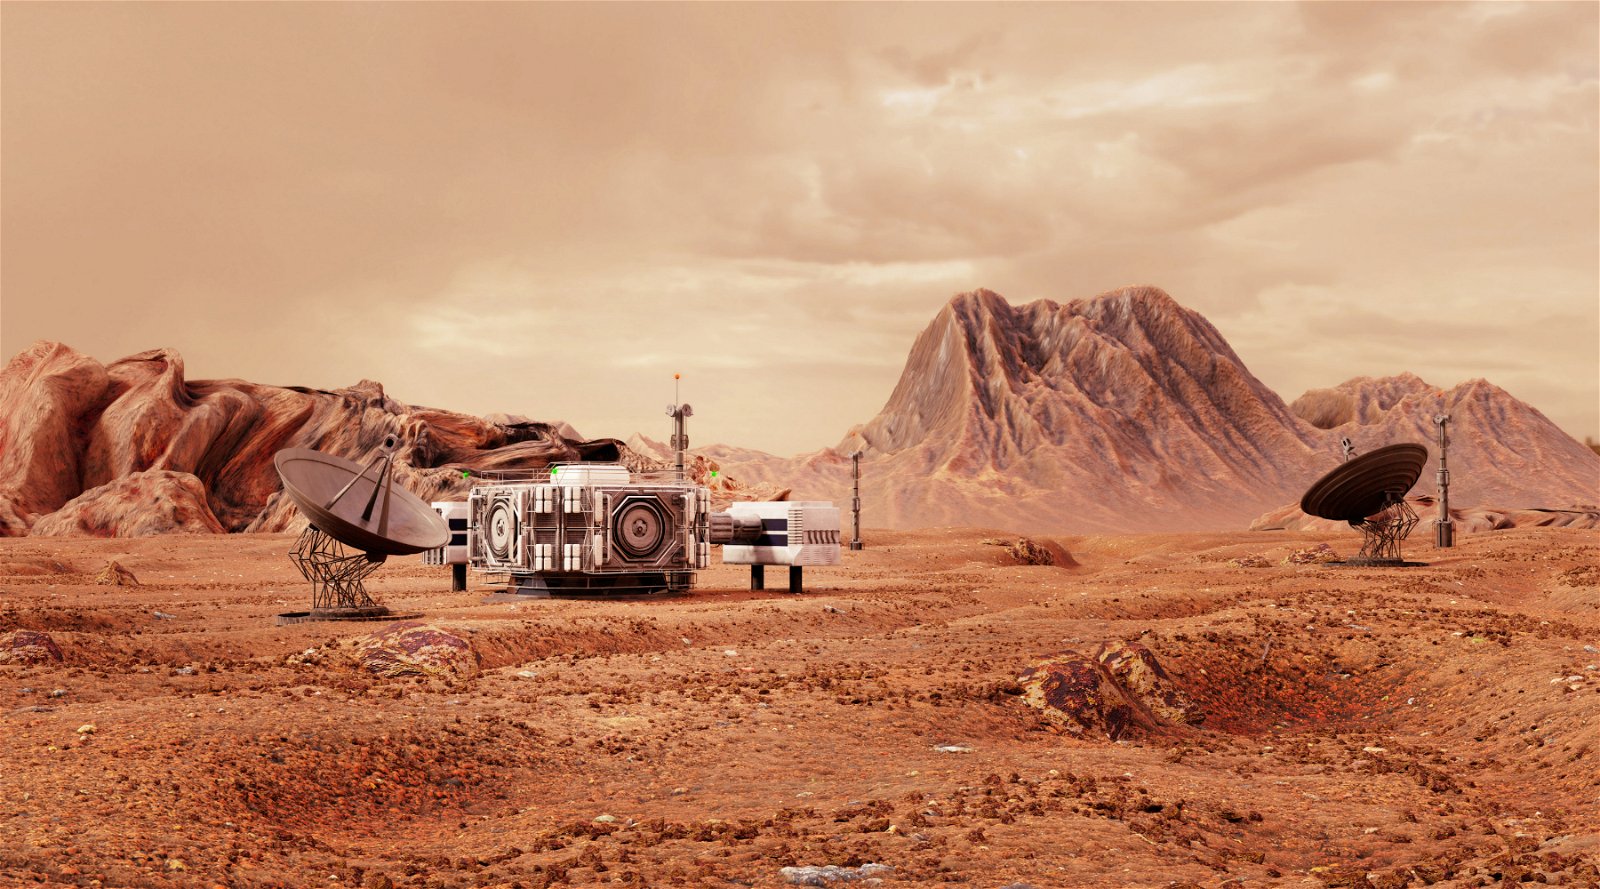 La NASA recherche des candidats pour tester à quoi cela ressemblerait sur Mars